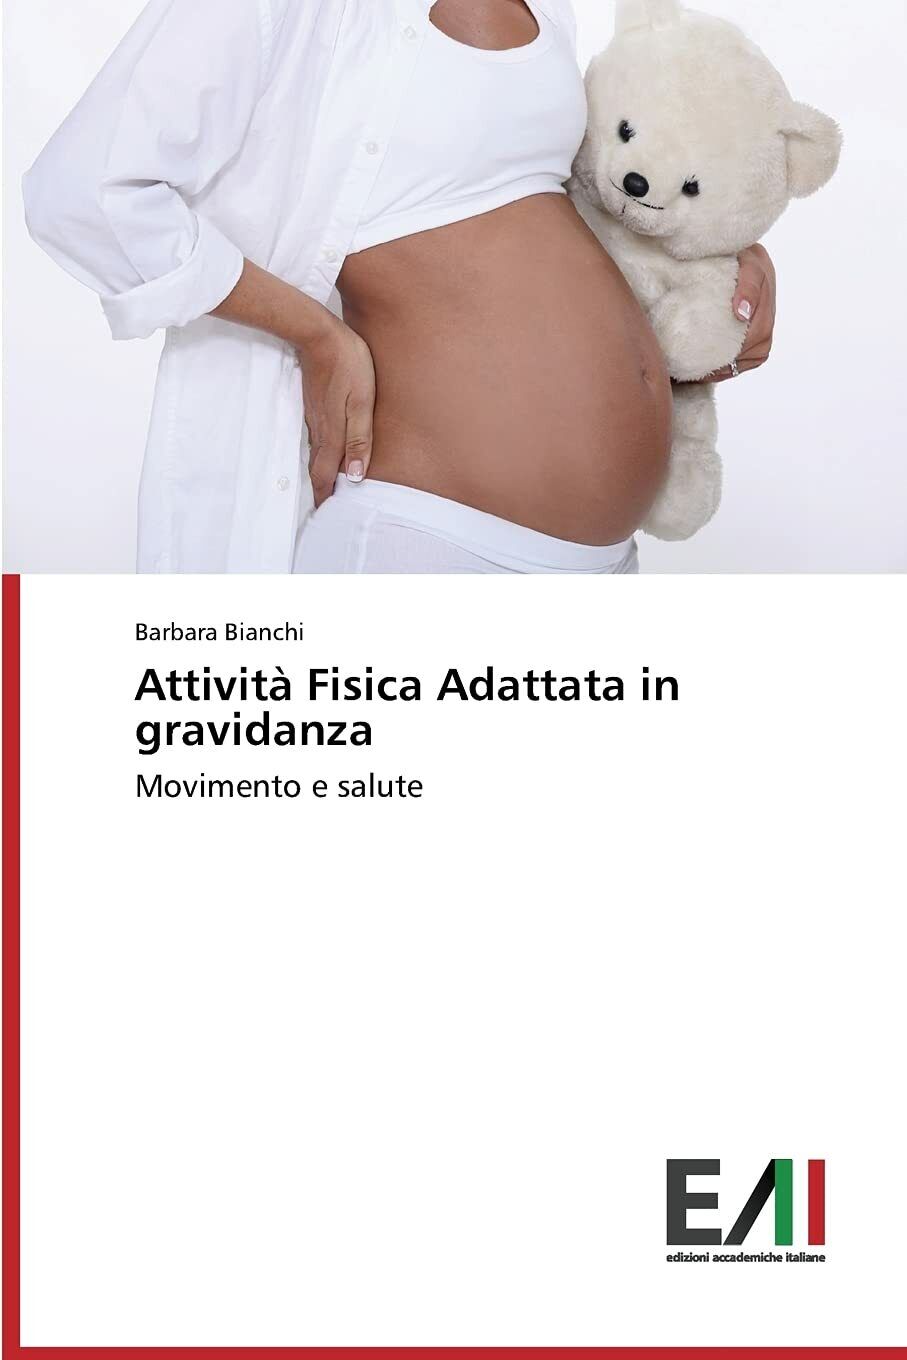 Attivit? Fisica Adattata in gravidanza - Barbara Bianchi - Accademiche Italiane